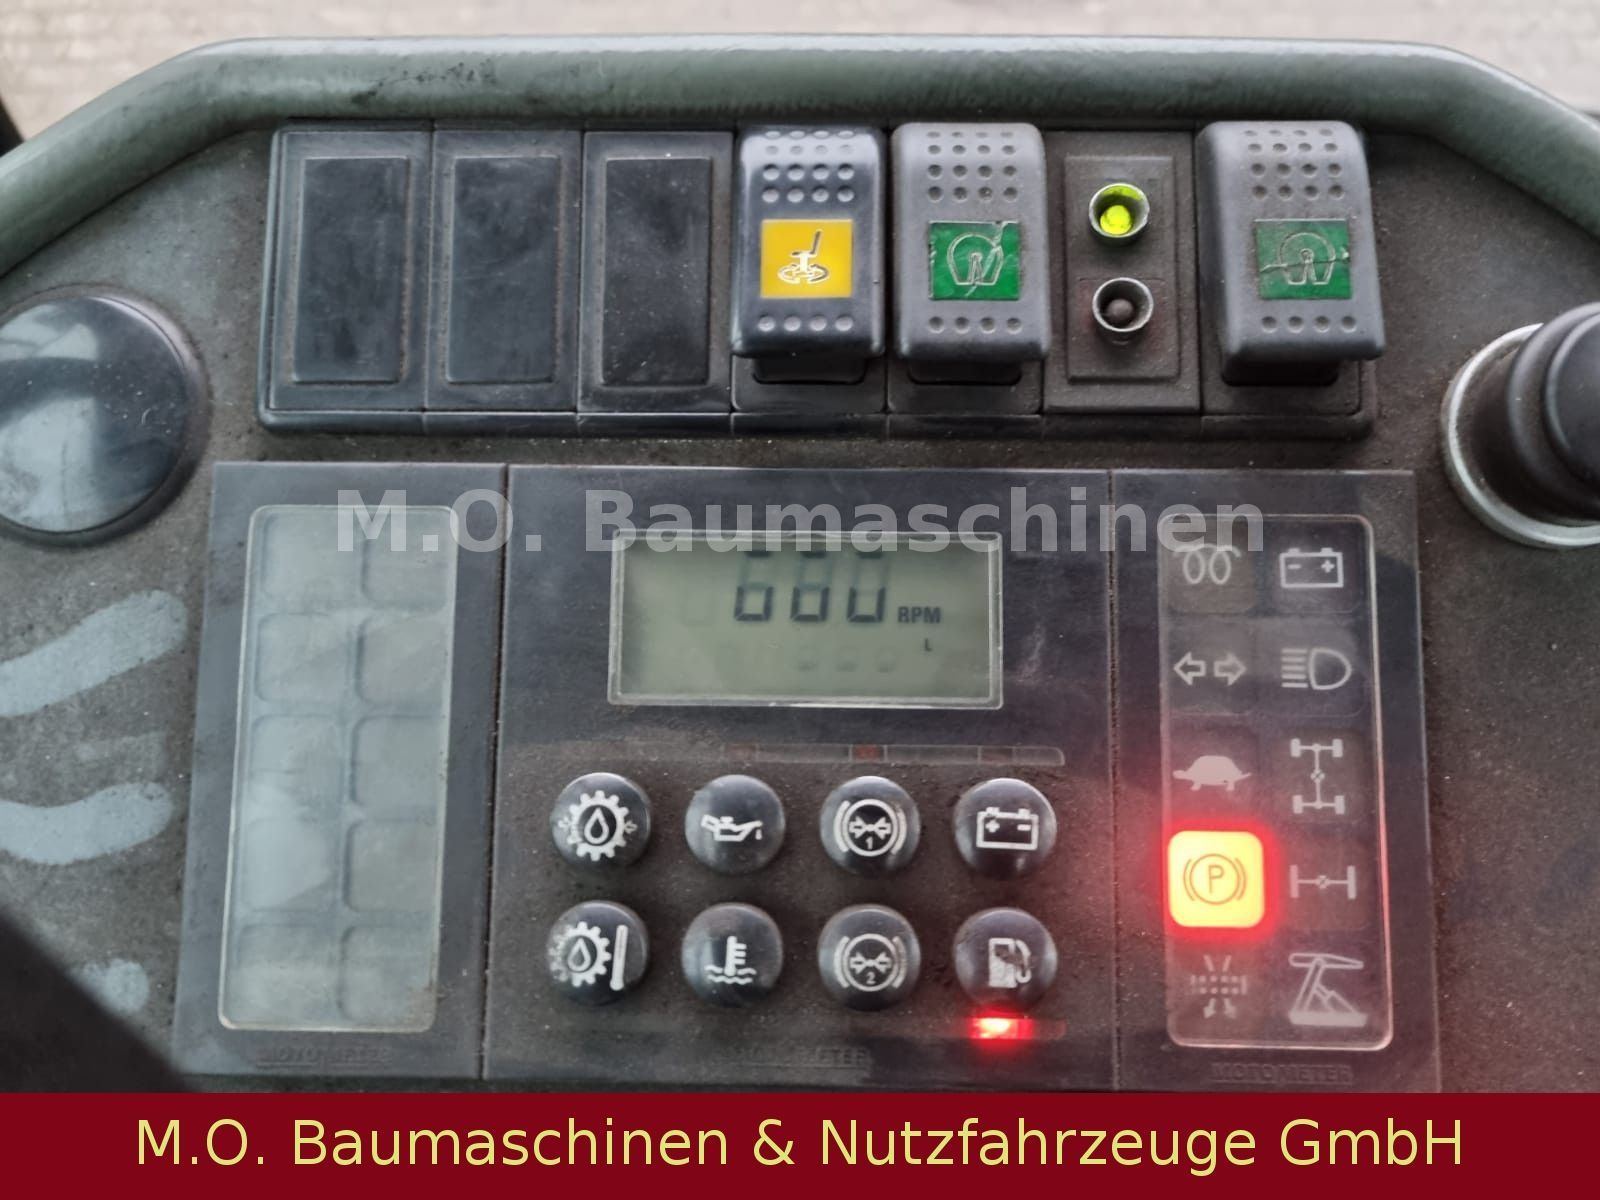 Fahrzeugabbildung Andere Terberg Schlepper RT 280 / 4x4  / Schlepper